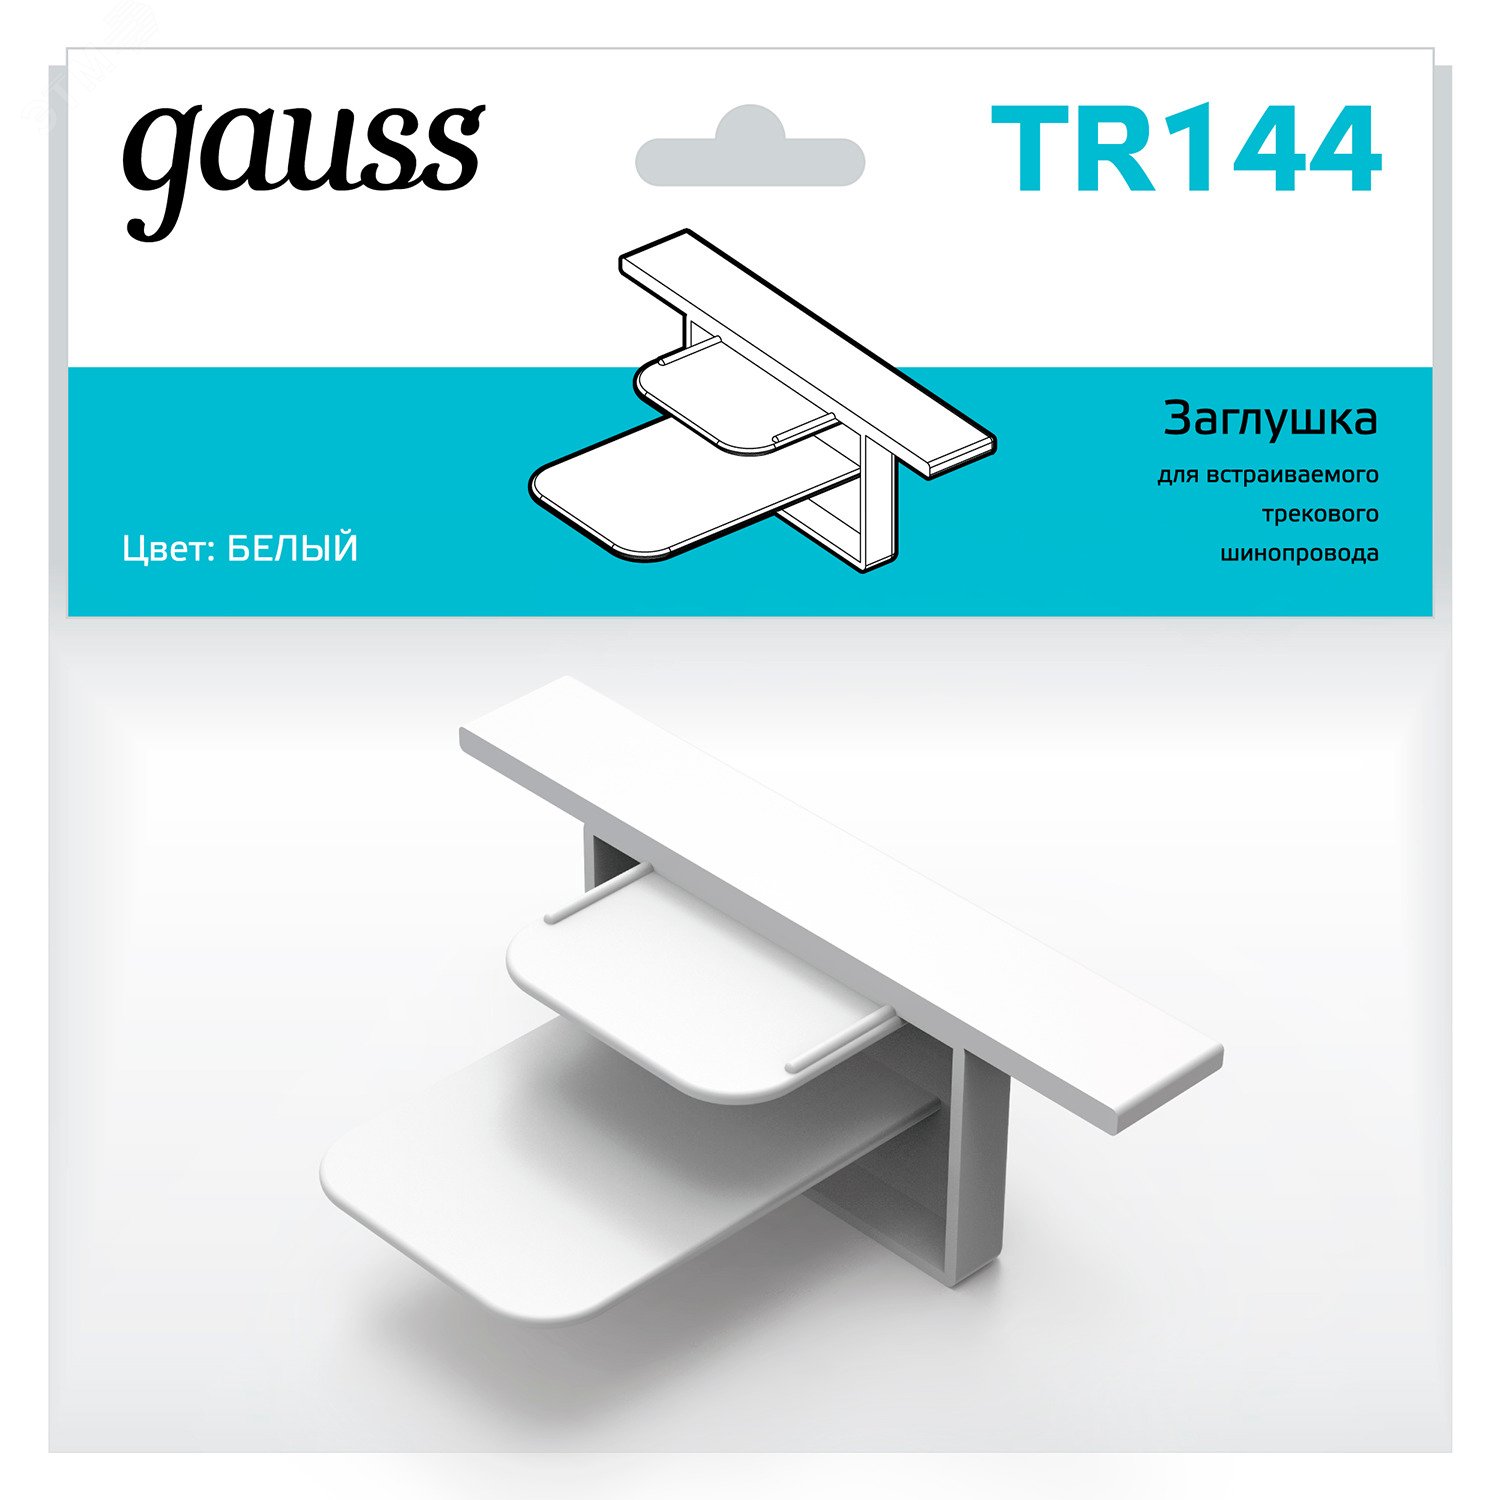 Заглушка для встраиваемого трекового шинопровода белый однофазный Gauss TR144 GAUSS - превью 4